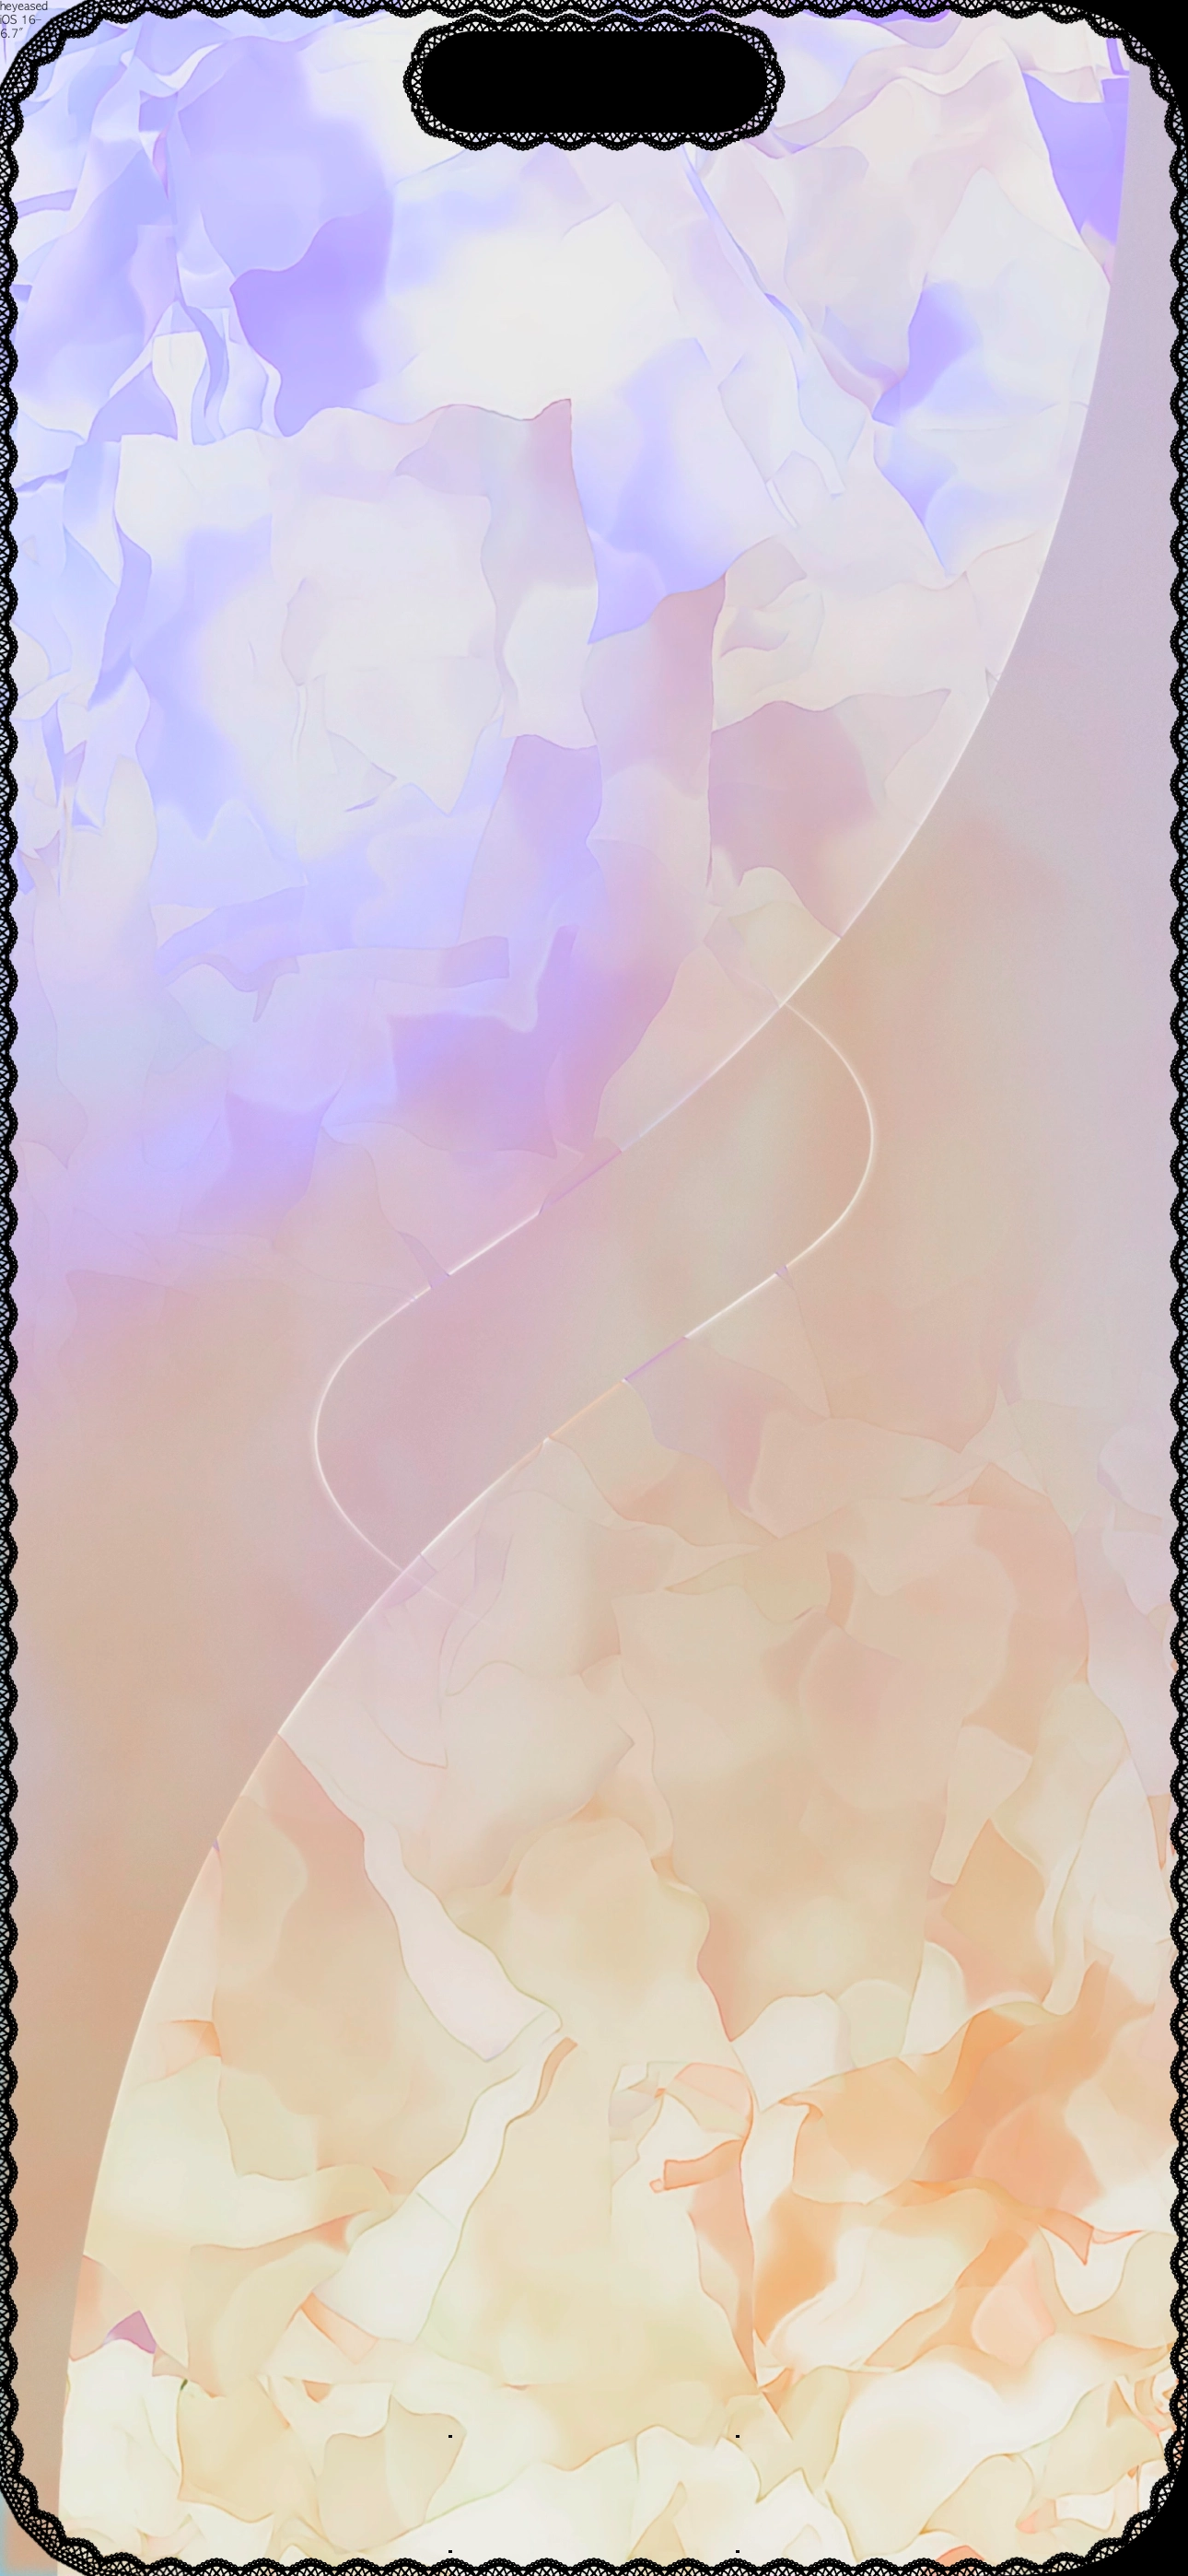 レースベゼルの壁紙 -14 Pro Max- Lace Bezel - Mysterious iPhone